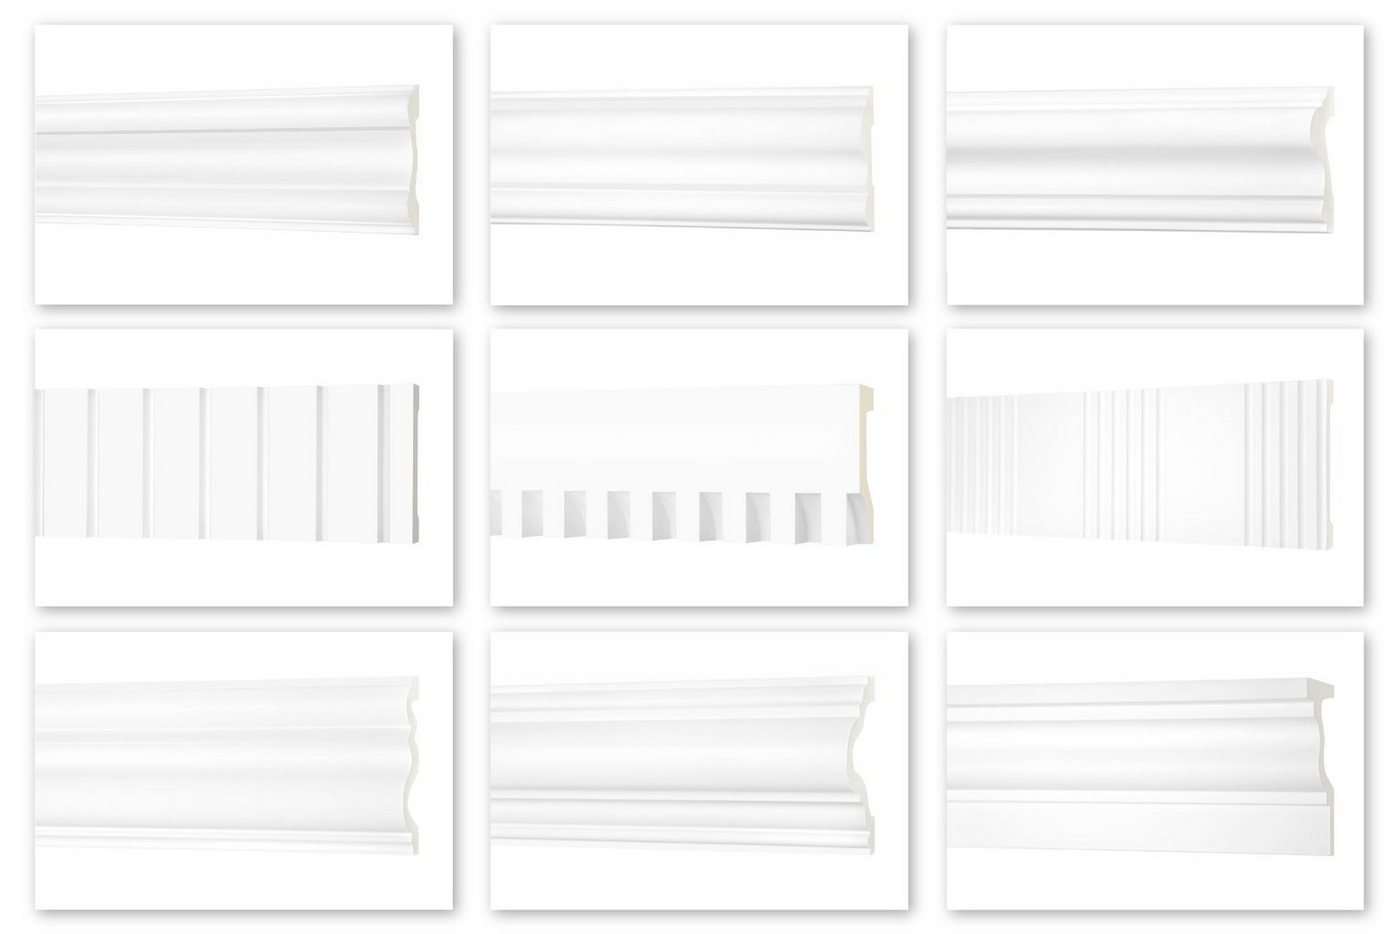 Hexim Perfect Stuckleiste AD 367, Flachleiste aus PU Serie 2 - Stuckleiste glatt, weißes Zierprofil, hart & stoßfest - Wandleiste vorgrundiert von Hexim Perfect